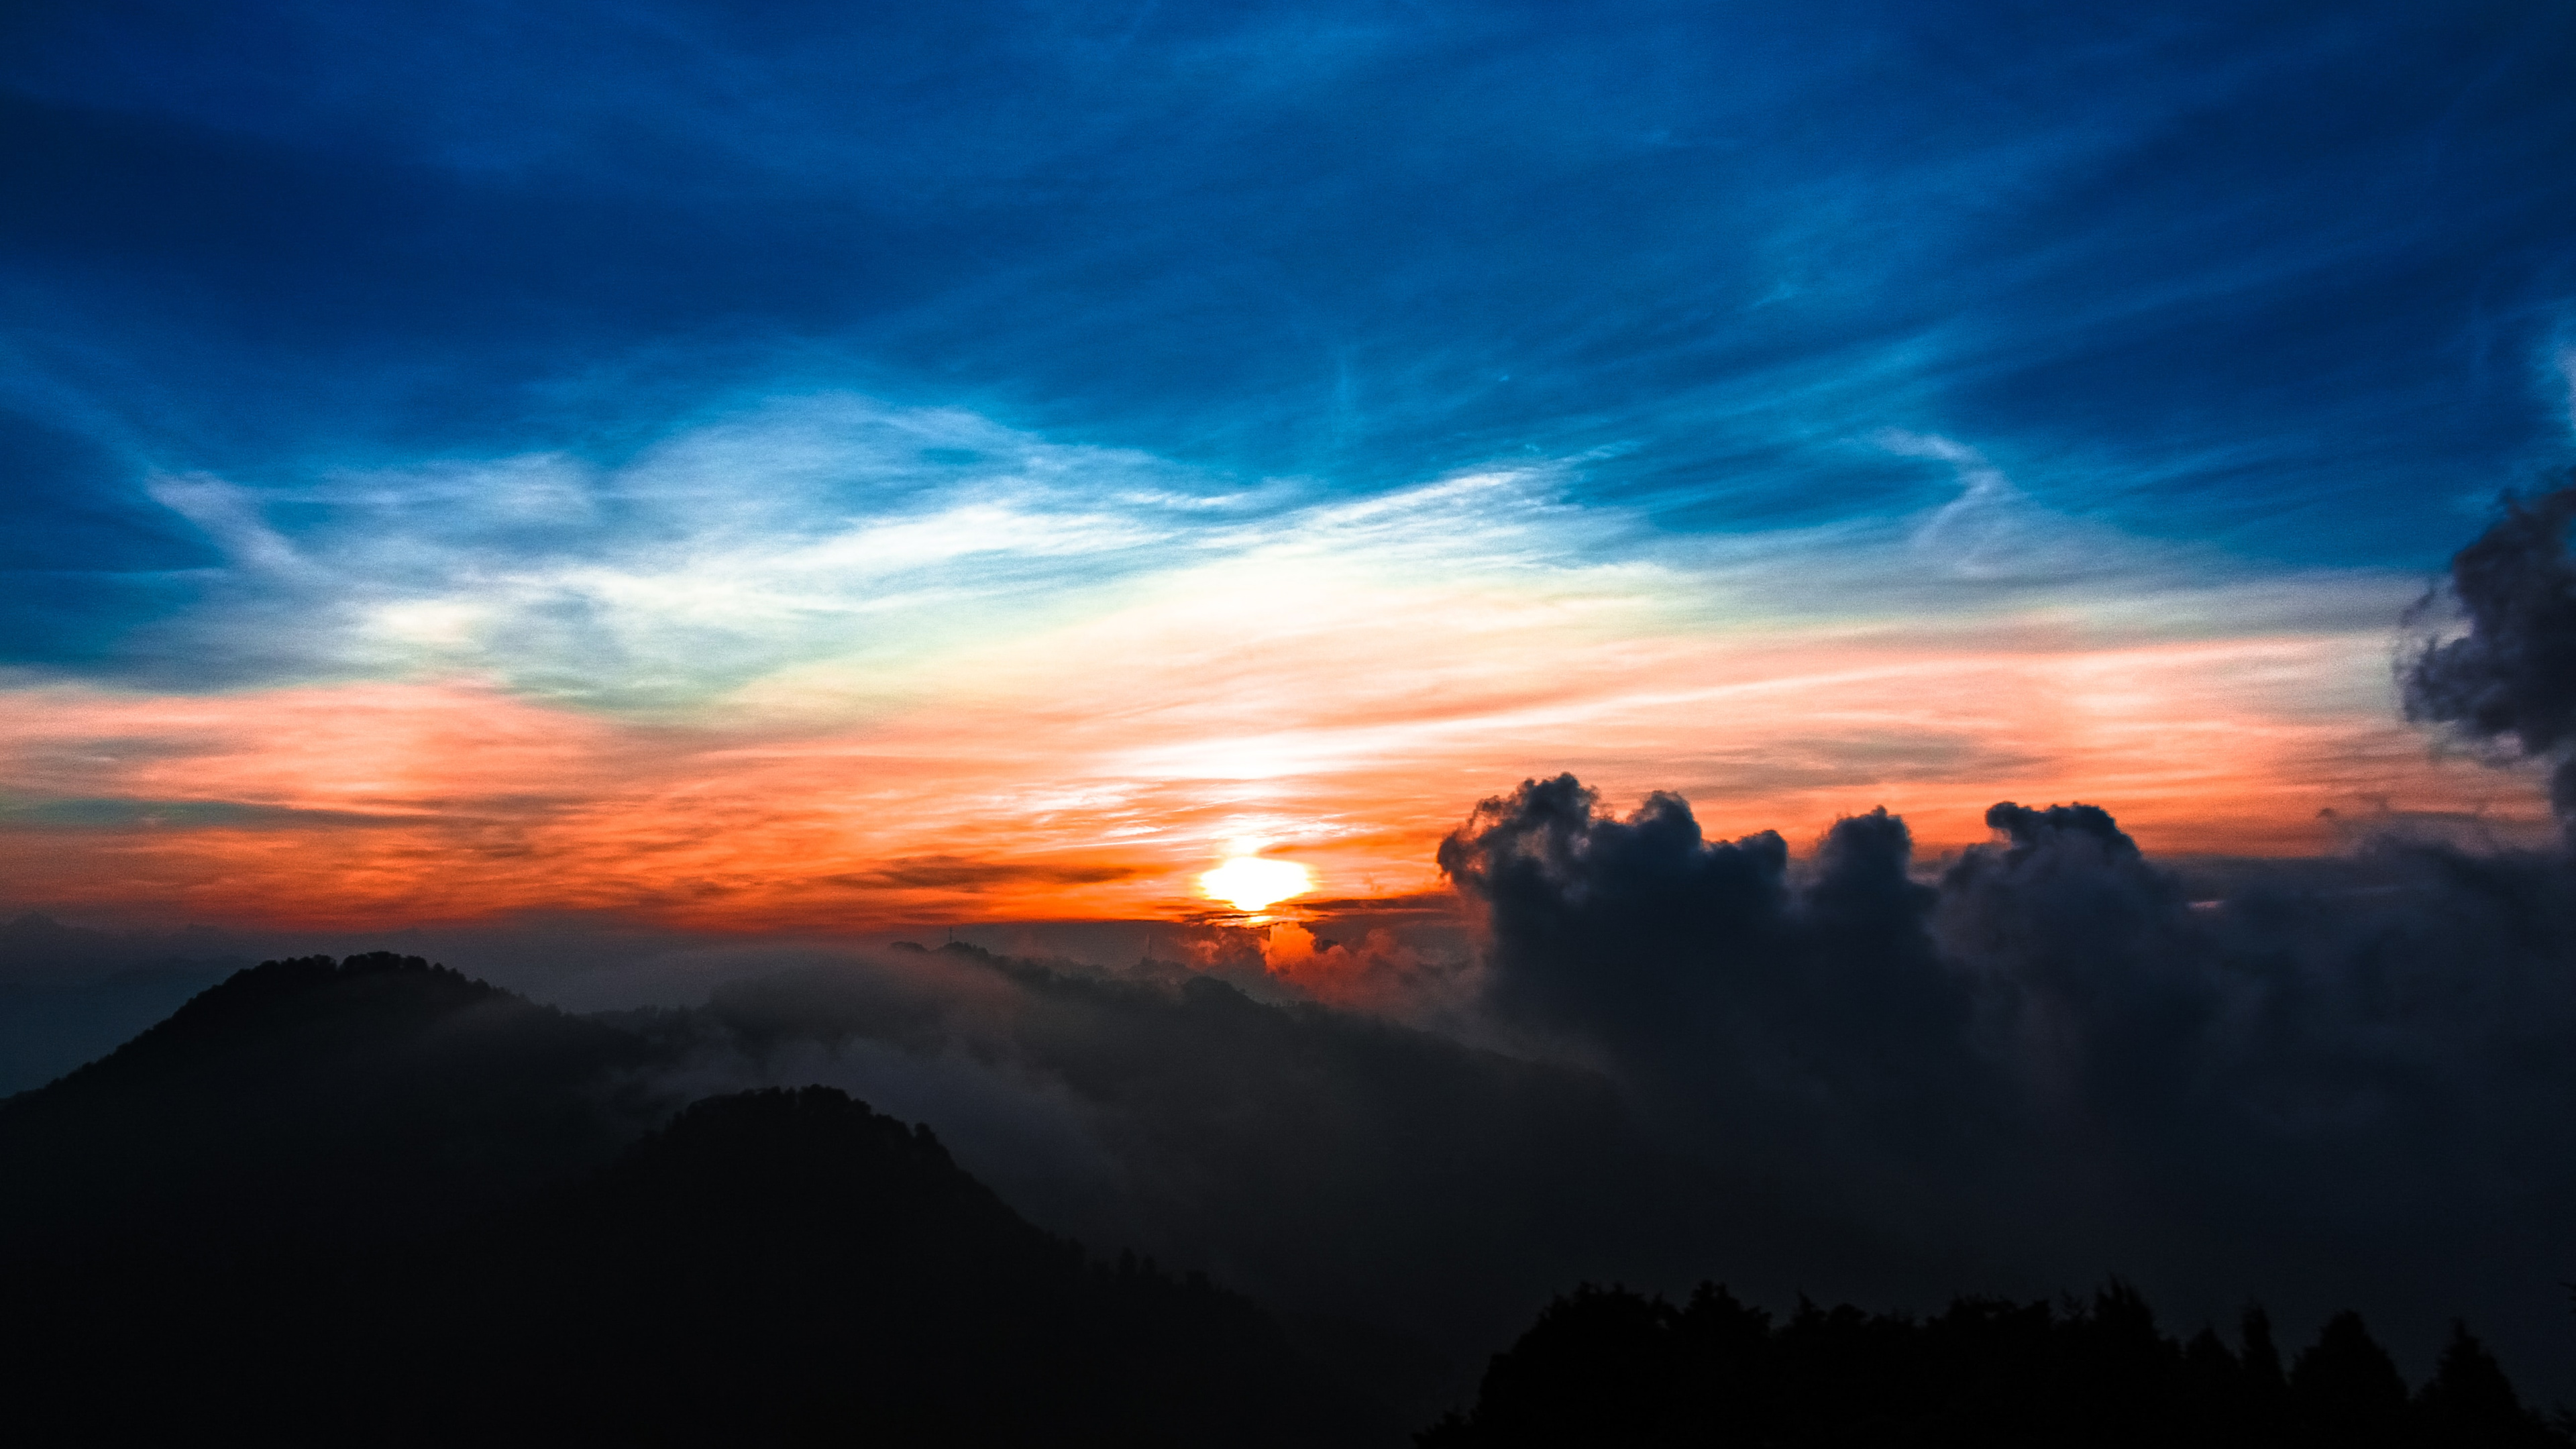 云雾妖娆的大山夕阳落下前的彩霞构成天然的风景画卷